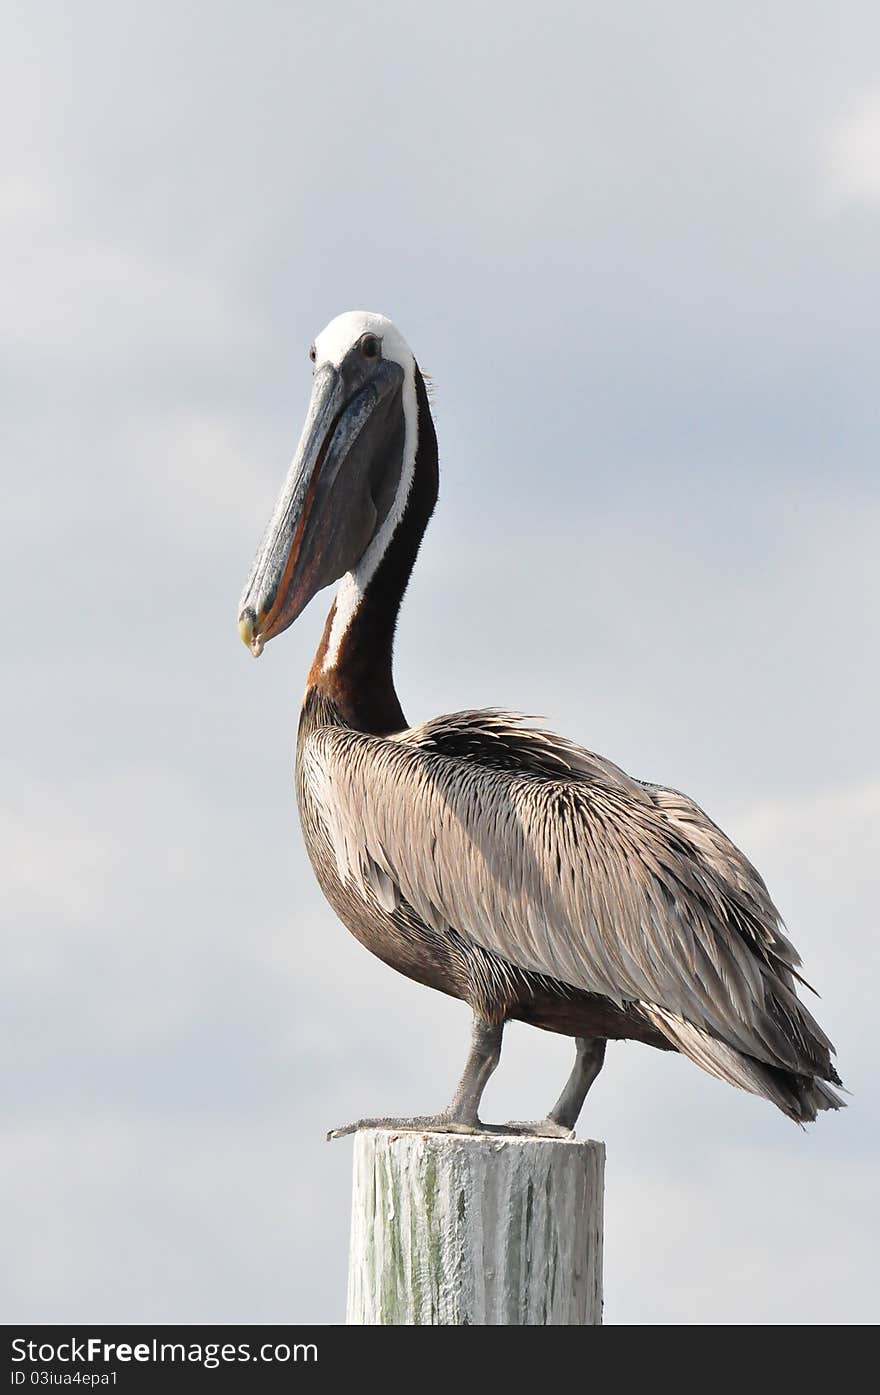 A brown pelican (genus Pelecanus) standing on a wood pole in Cedar Key, FL.